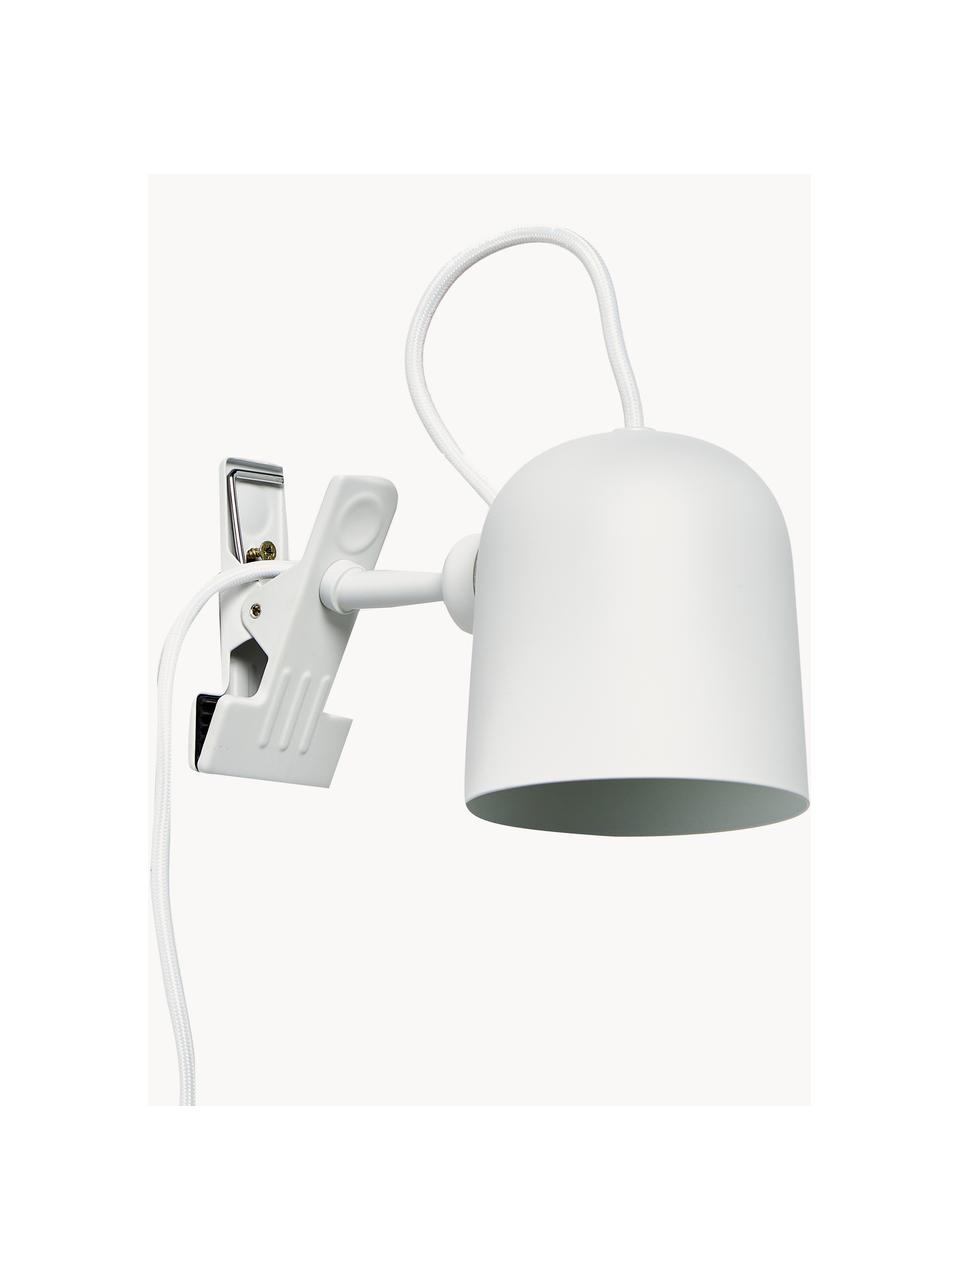 Lámpara de escritorio Angle, Lámpara: metal con pintura en polv, Cable: cubierto en tela, Blanco, Ø 10 x Al 12 cm